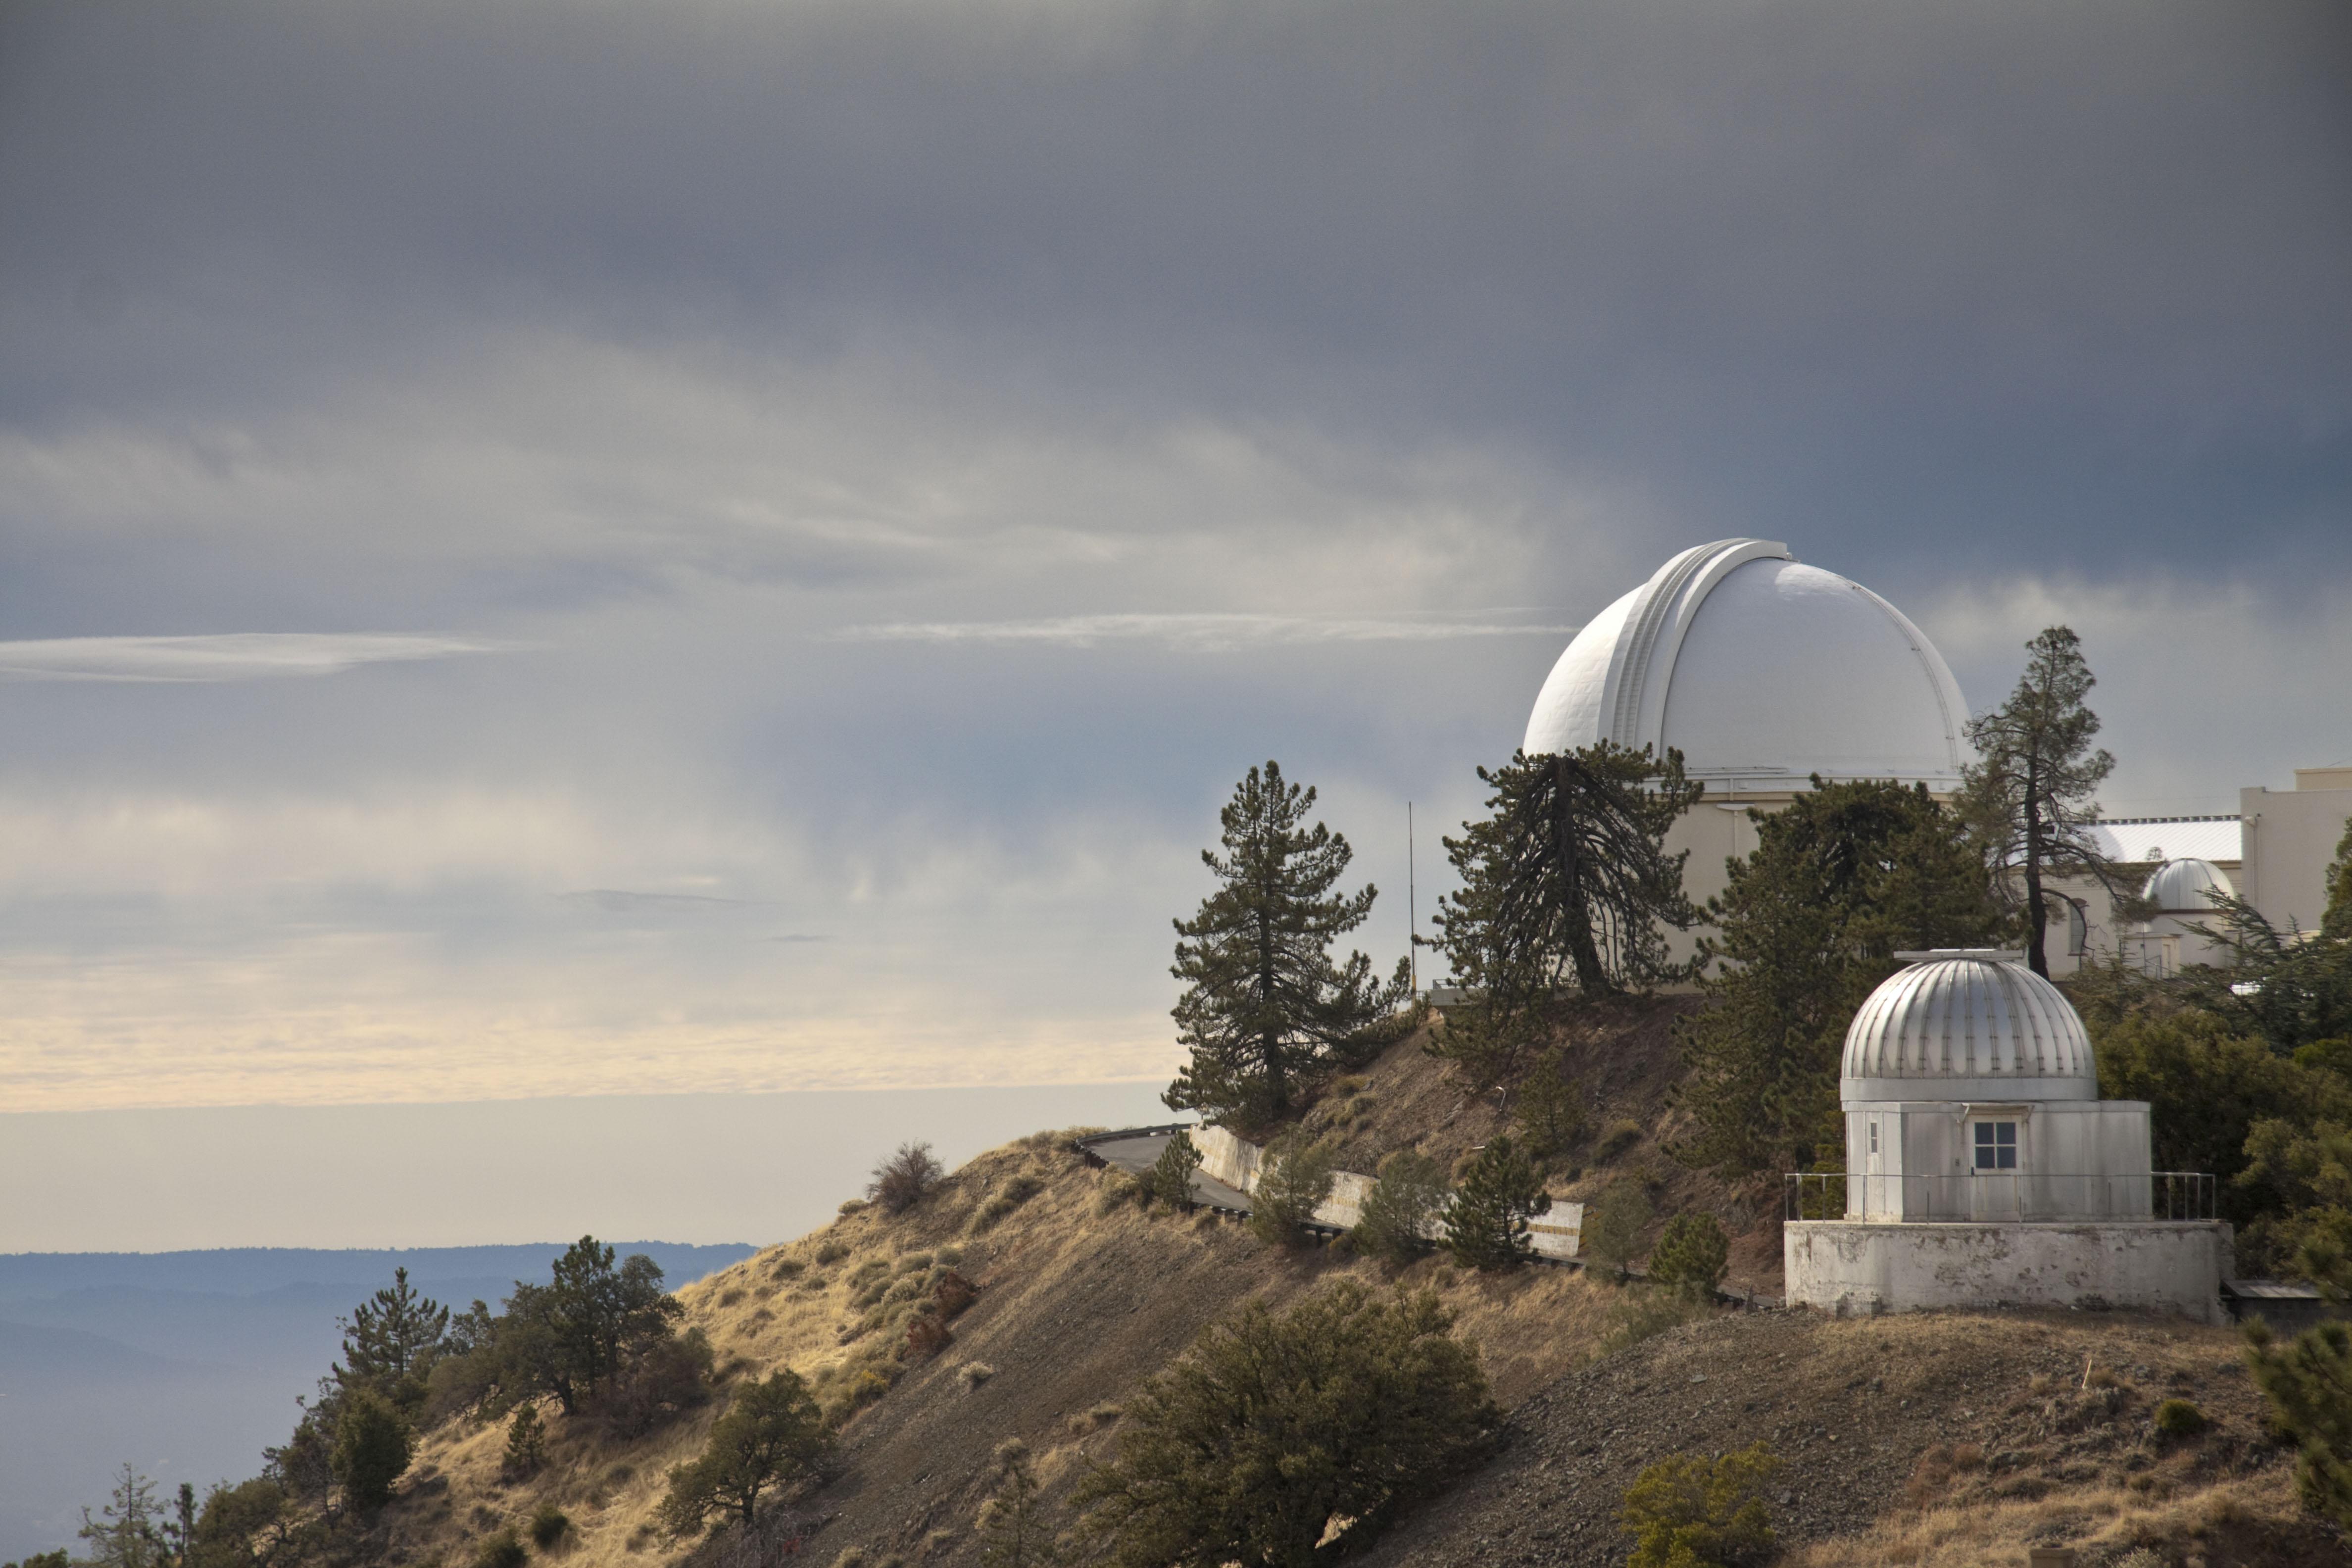 Ca lick observatory